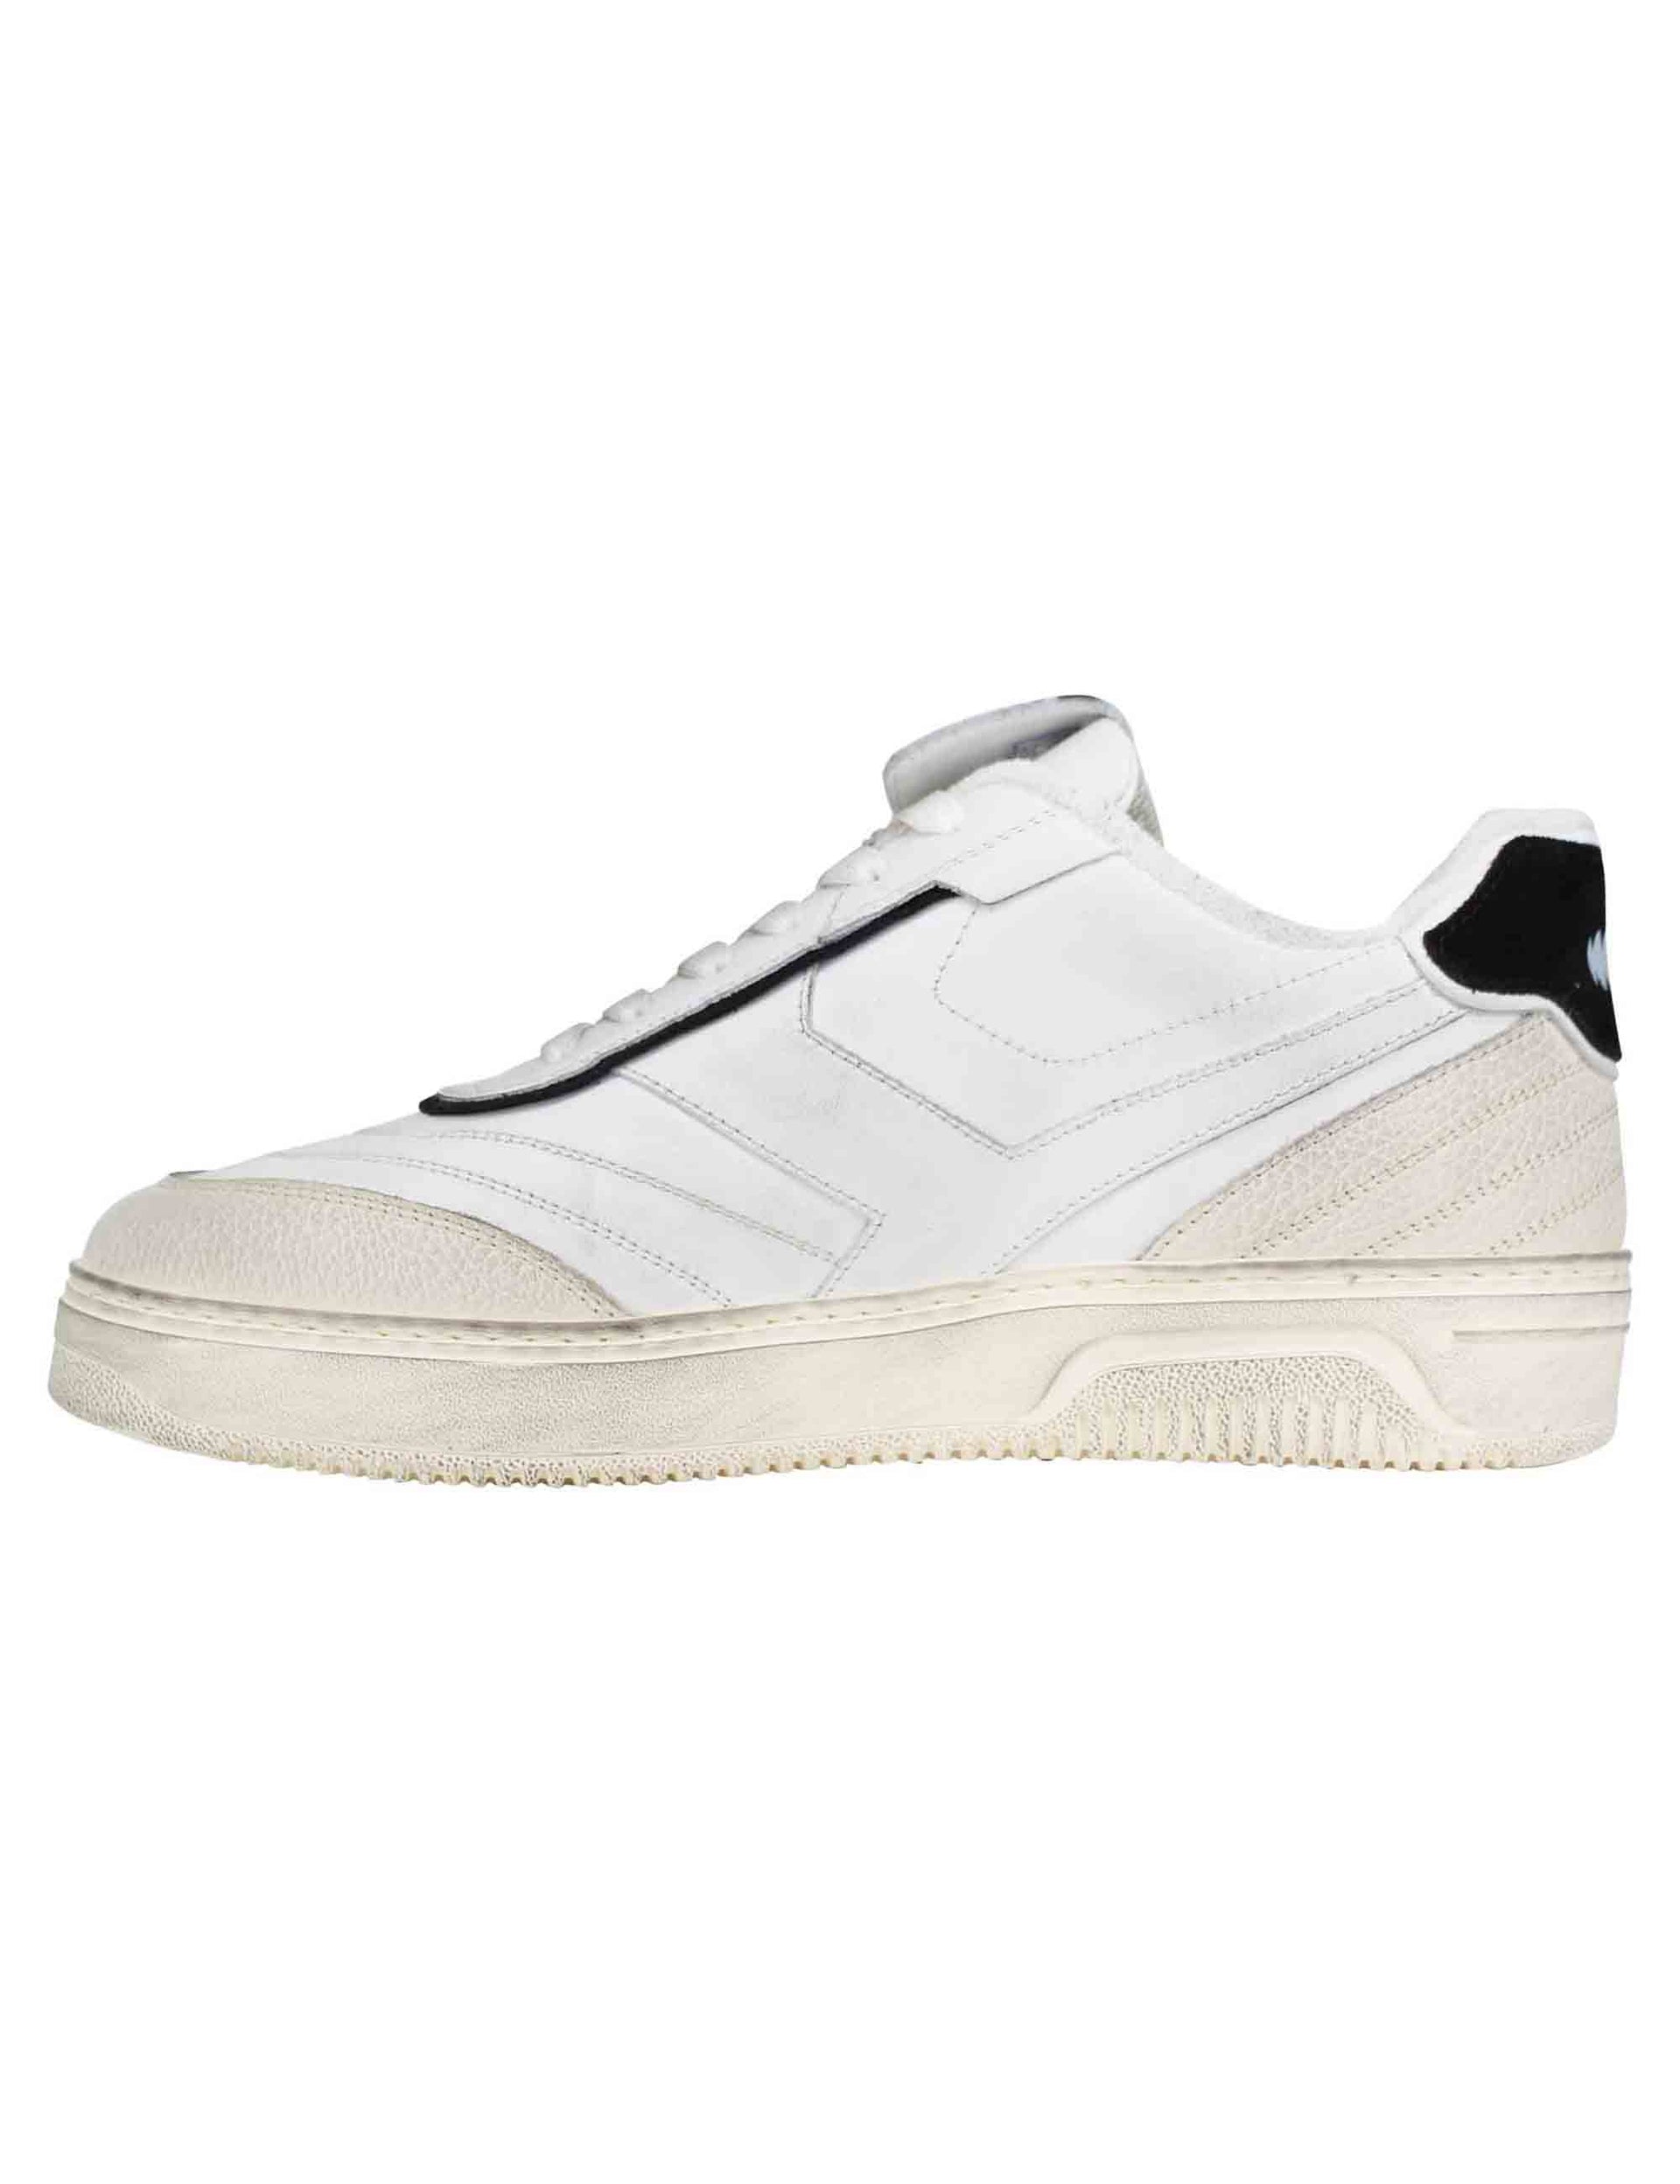 Sneakers uomo Pdo in pelle bianca vintage